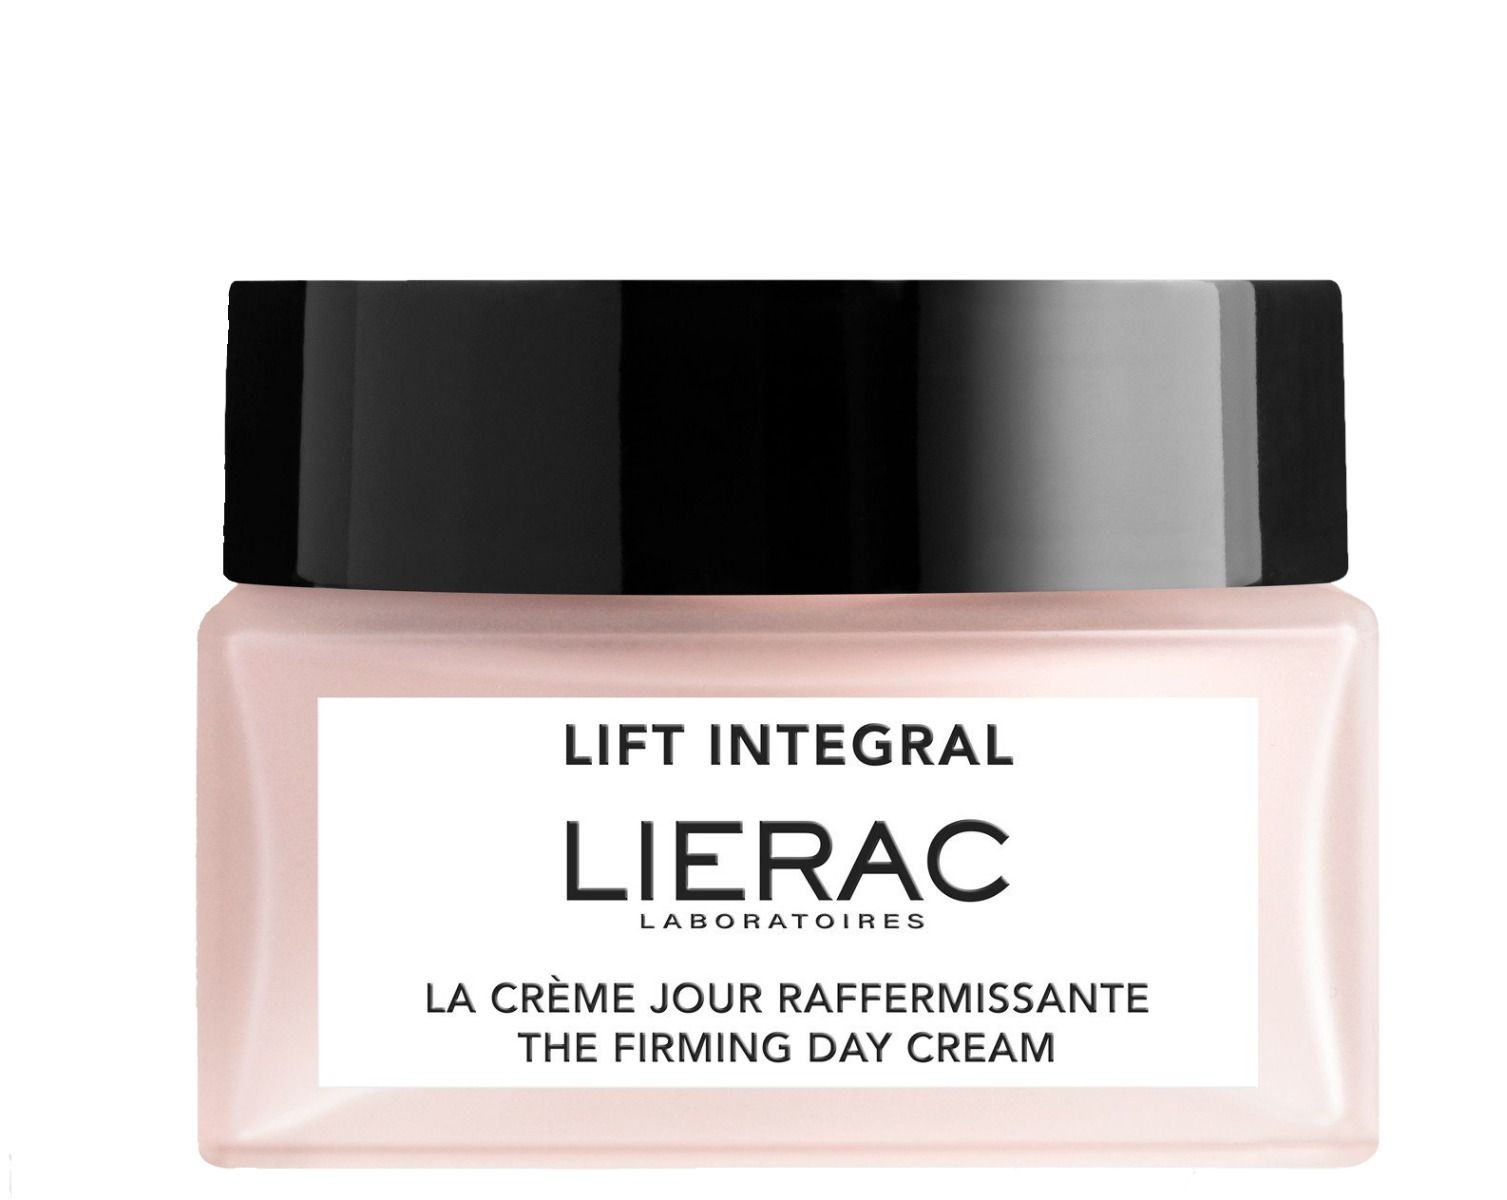 Lierac Lift Integral дневной крем для лица, 50 ml lierac ремоделирующий крем для бюста и зоны декольте 75 мл lierac lift integral